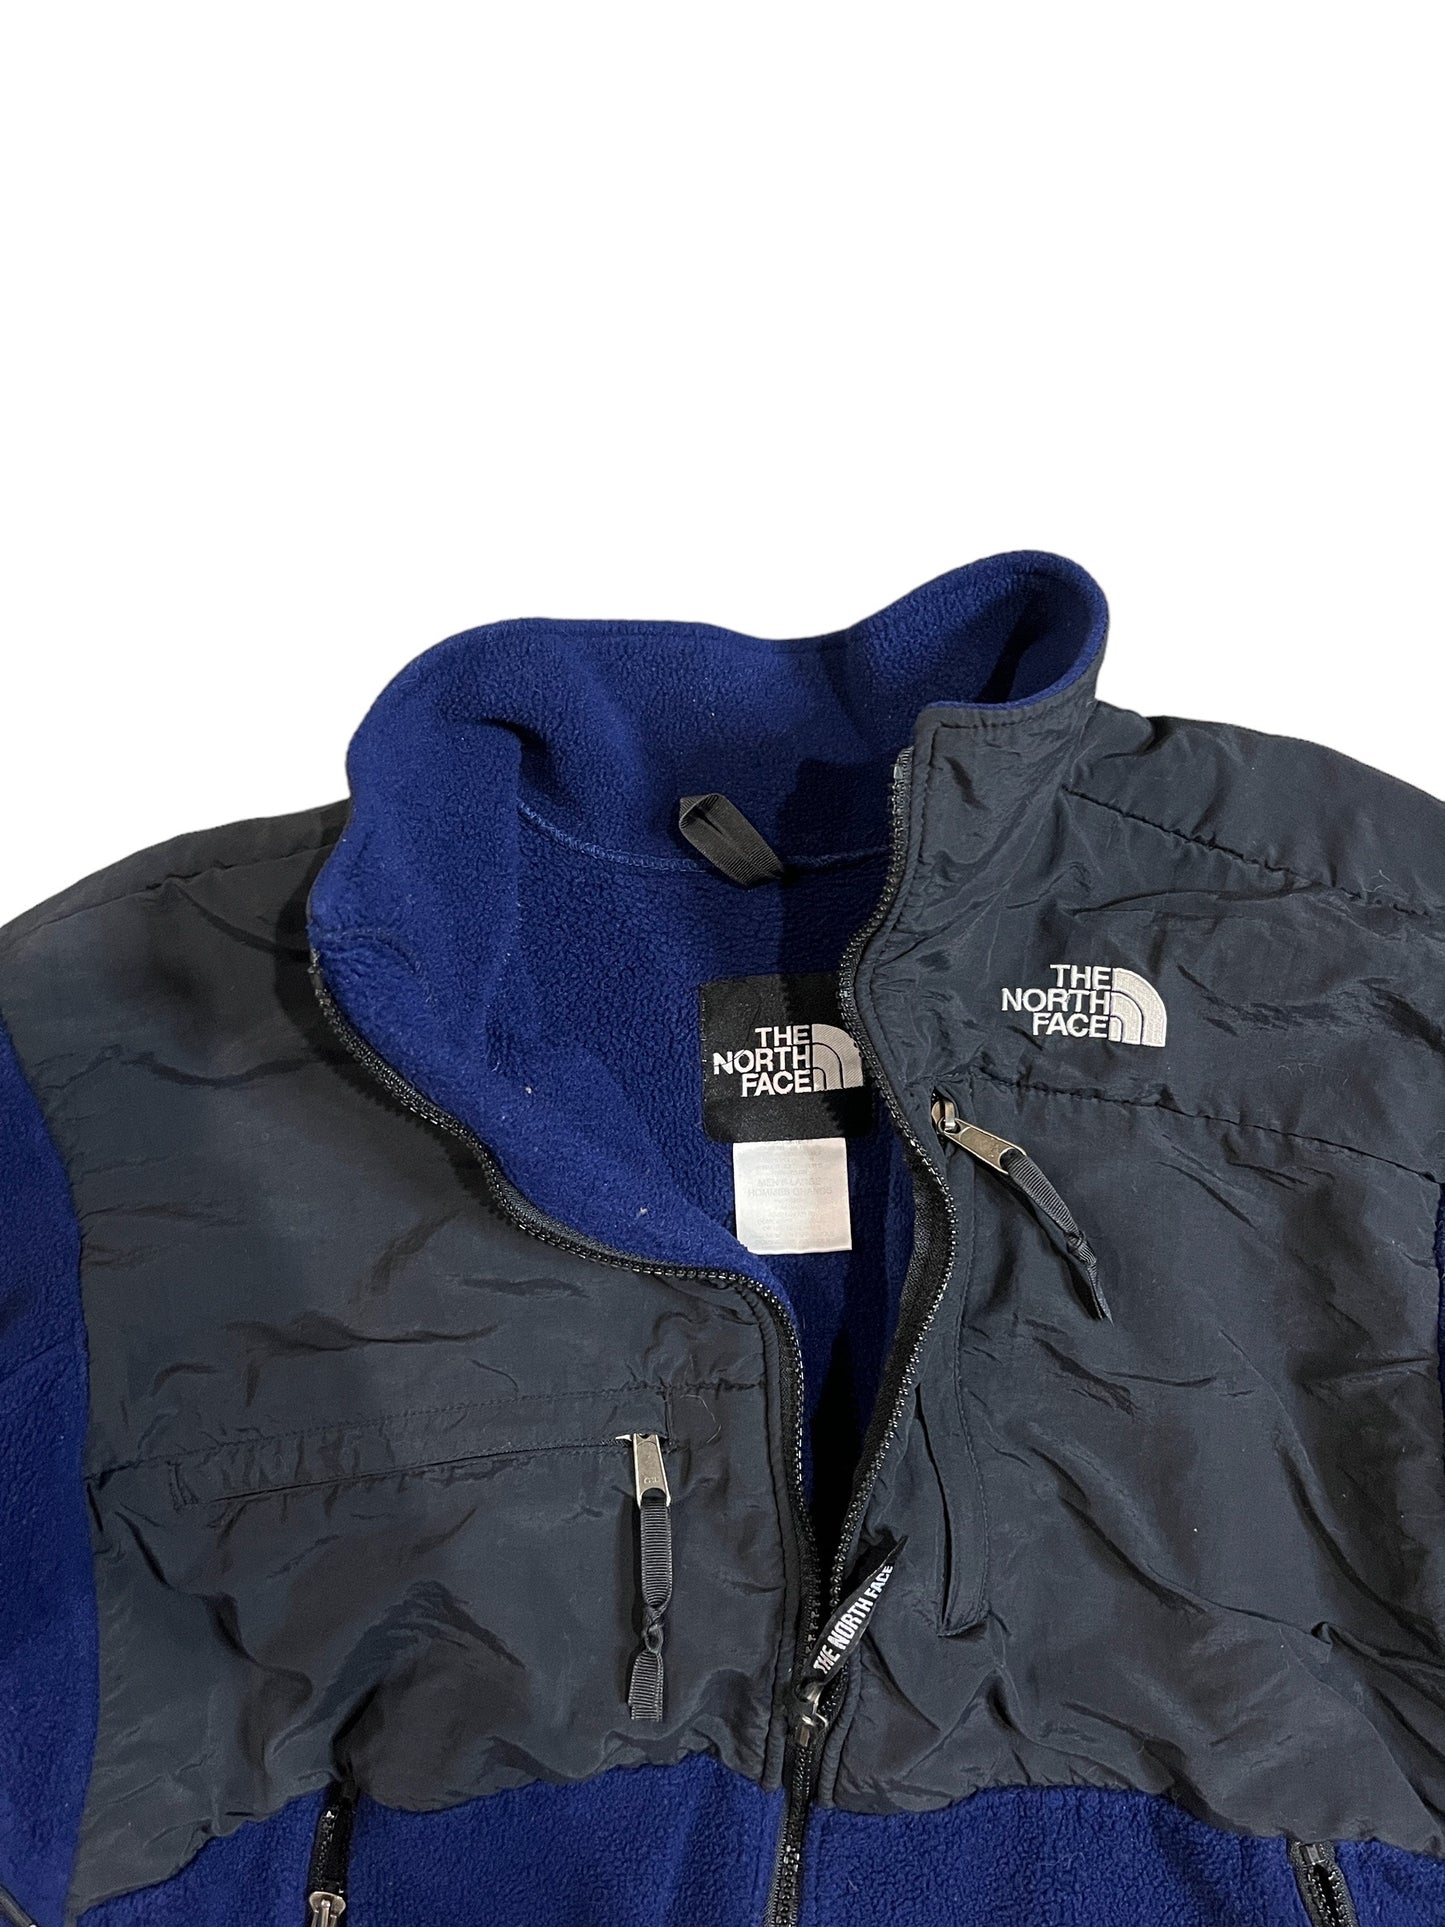 The North Face Fleece Zip Up Jacket